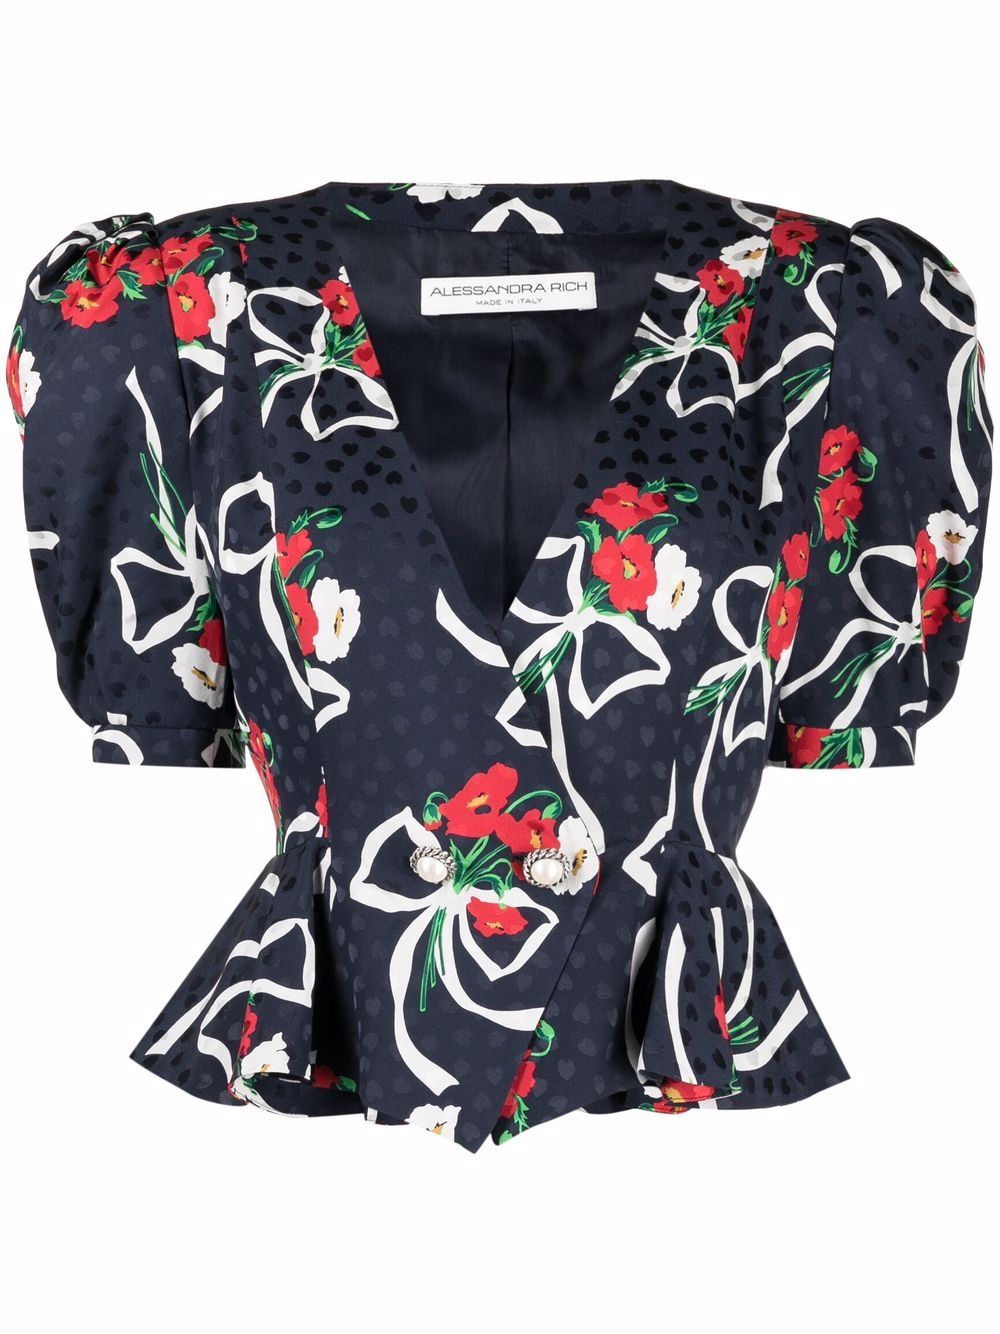 фото Alessandra rich блузка с баской и цветочным принтом